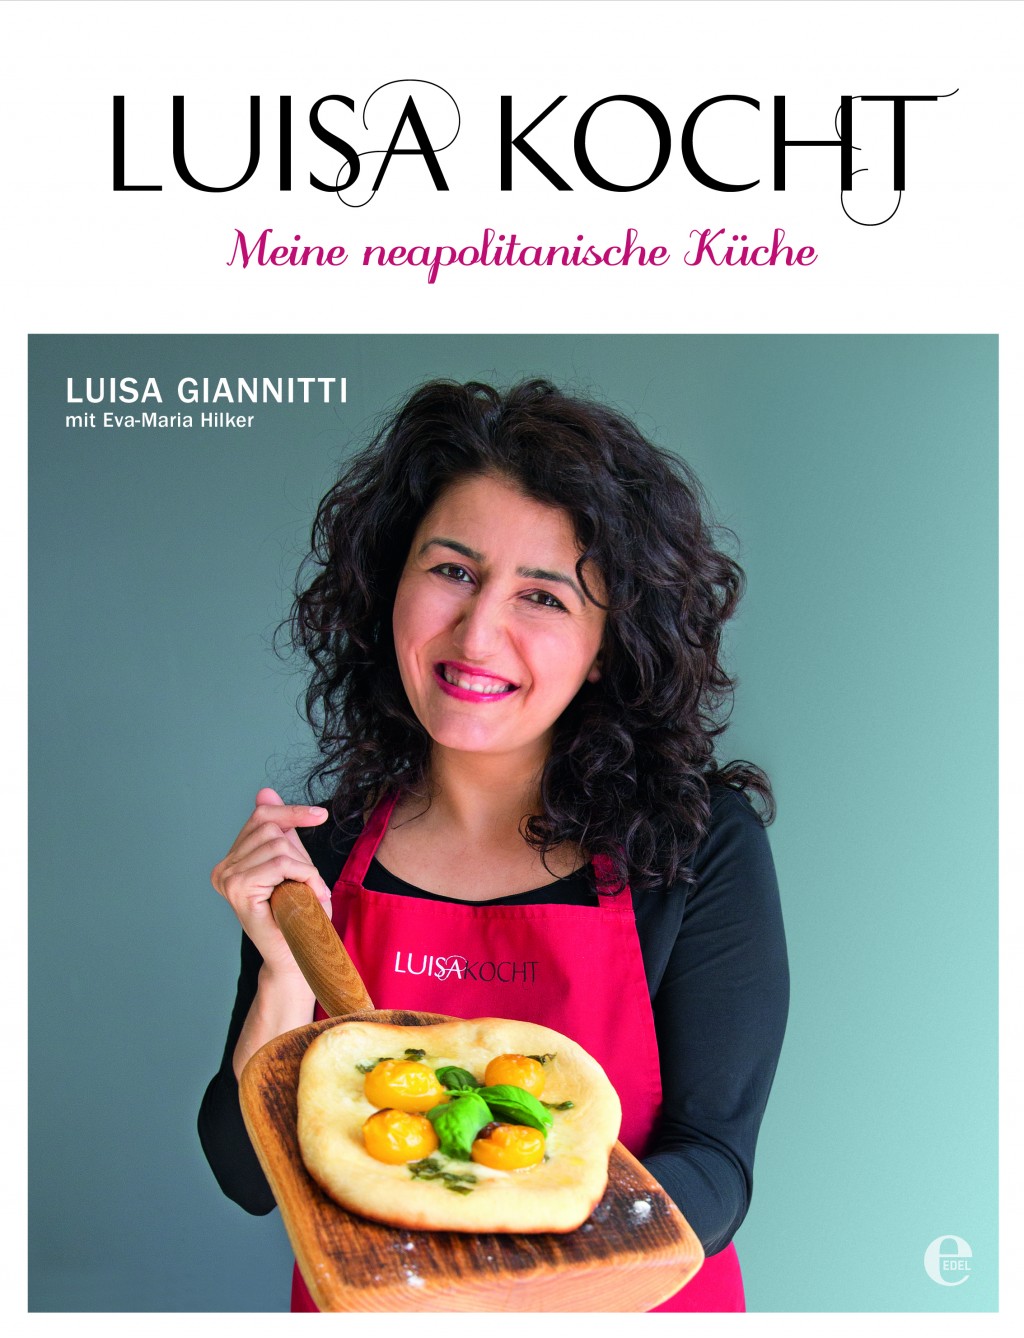 Aus dem Buch »Luisa kocht« von Luisa Giannitti mit Eva-Maria Hilker und Bildern von © Pia Negri, © Edel Books.